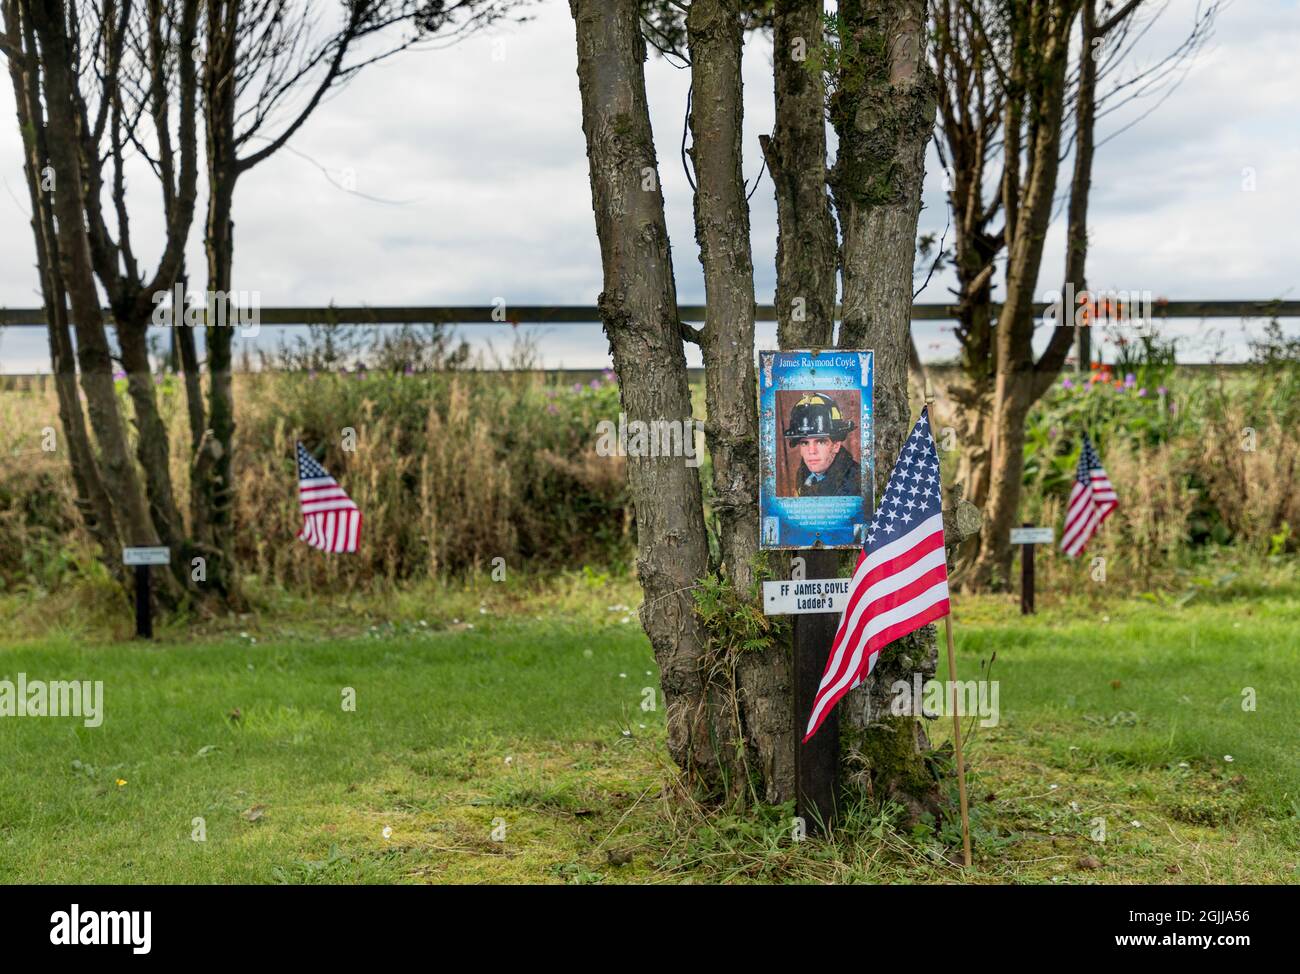 Ringfinnan, Kinsale, Cork, Irlande. 10 septembre, 2021.un drapeau américain se trouve à côté d'un arbre qui a été planté à la mémoire du pompier James Coyle qui a sacrifié sa vie pour sauver d'autres lors de l'attaque de 9/11. Au total, 343 arbres ont été plantés à la mémoire de tous les pompiers qui sont morts ce jour-là au jardin du souvenir à Ringfinnan, Kinsale, Co. Cork, Irlande - photo; David Creedon / Alamy Live News Banque D'Images